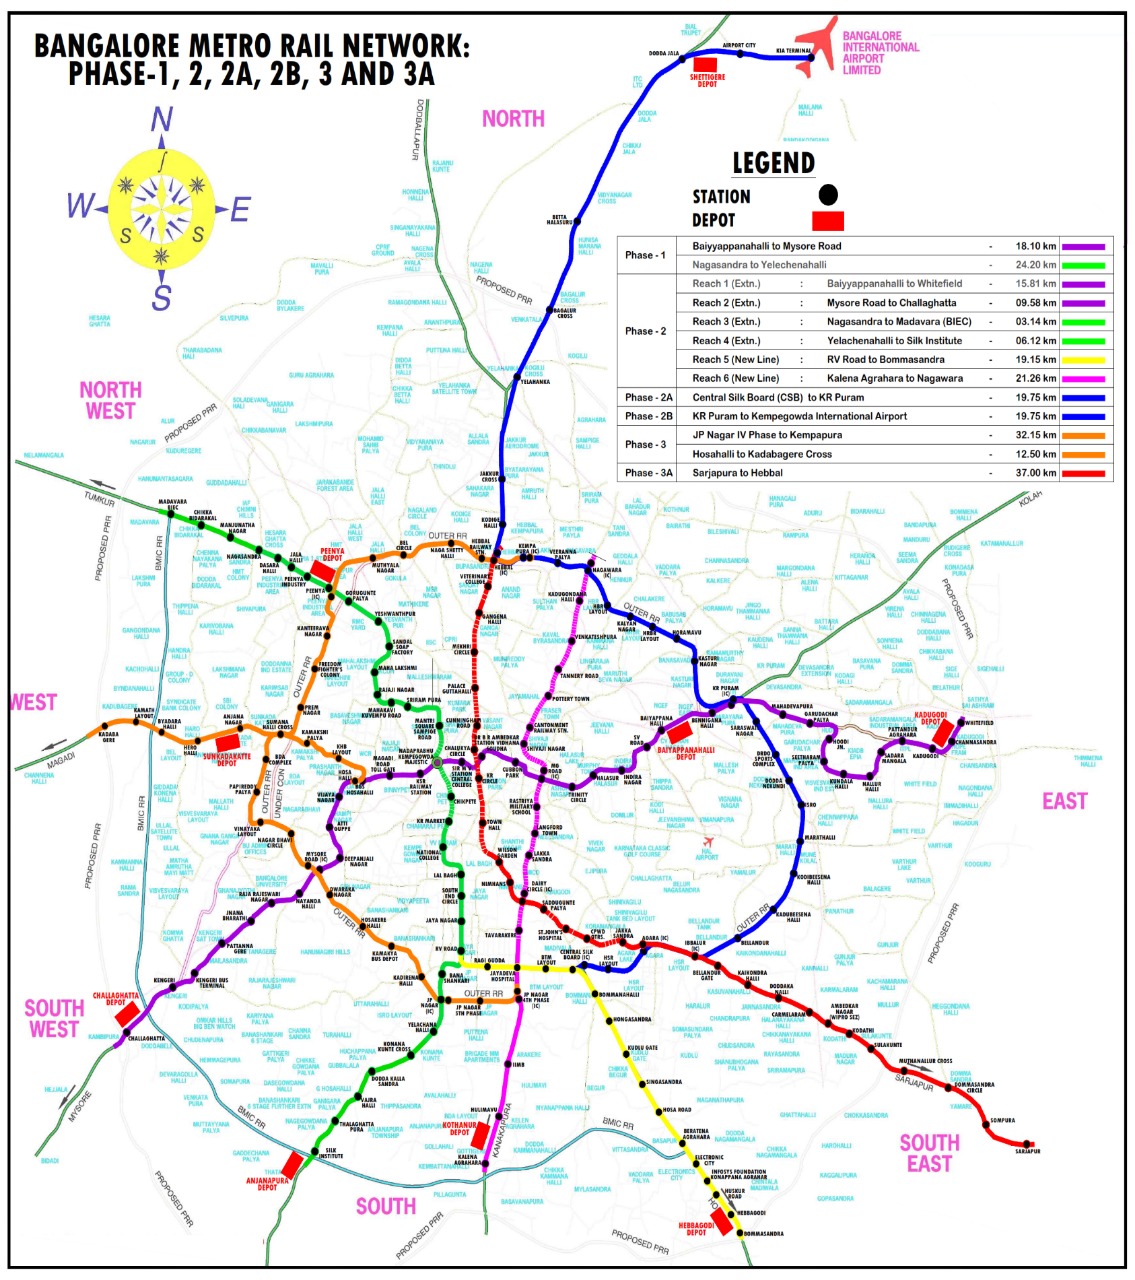 Delhi Road Map